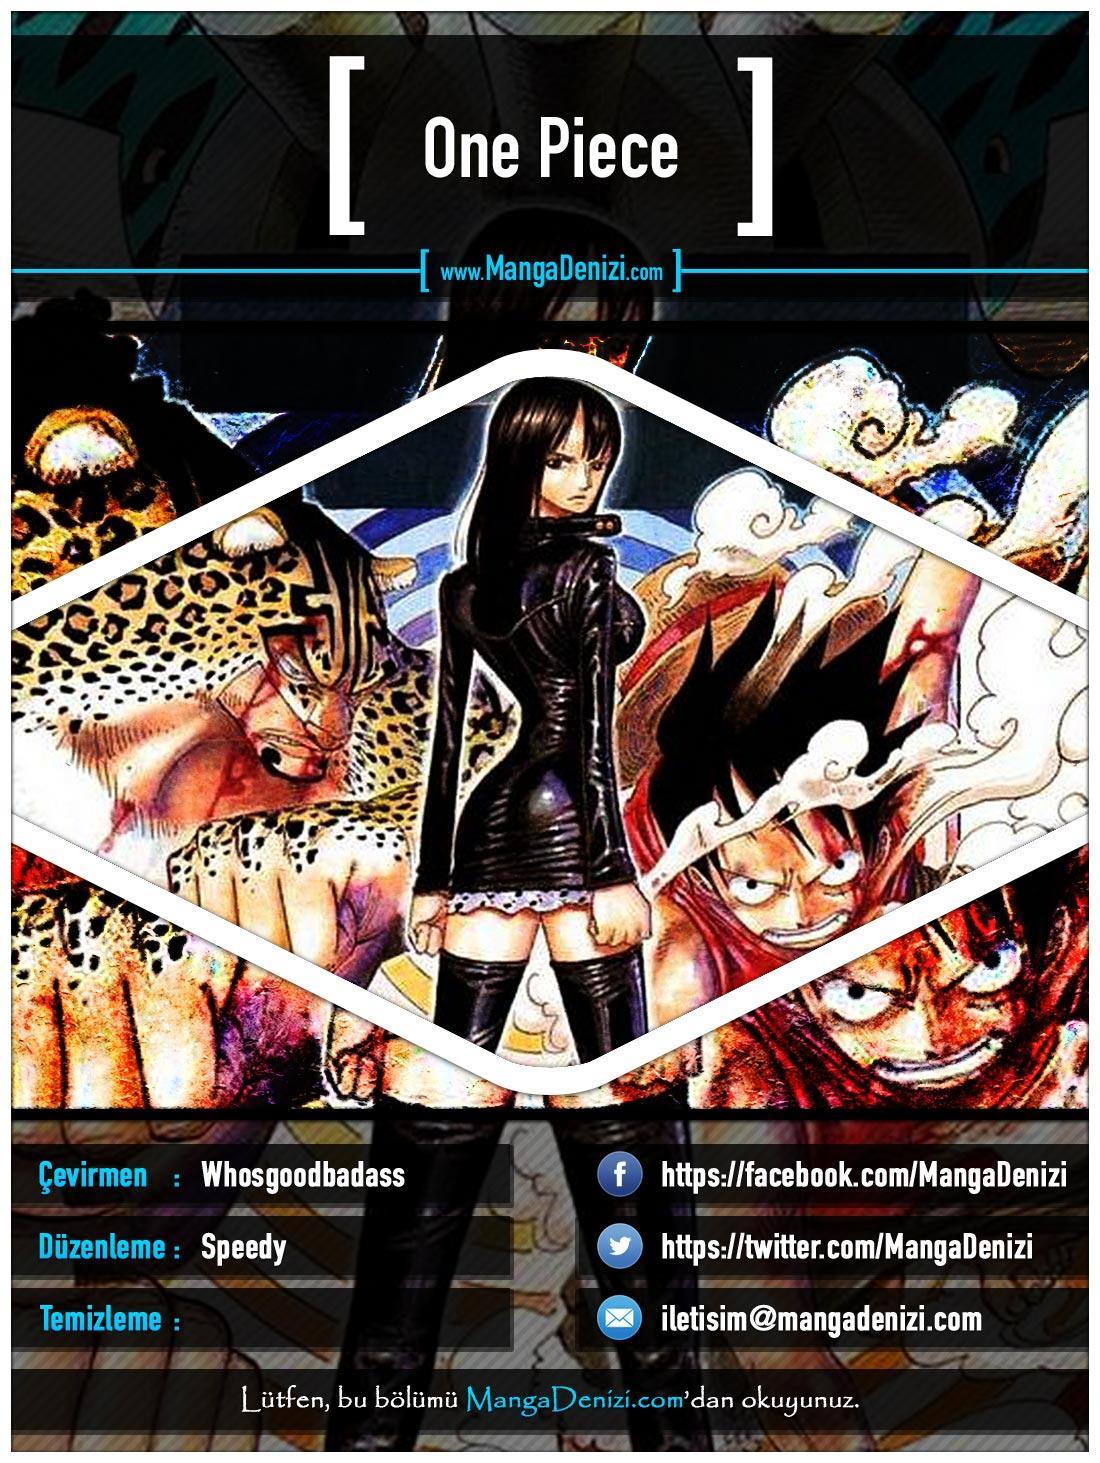 One Piece [Renkli] mangasının 0389 bölümünün 1. sayfasını okuyorsunuz.